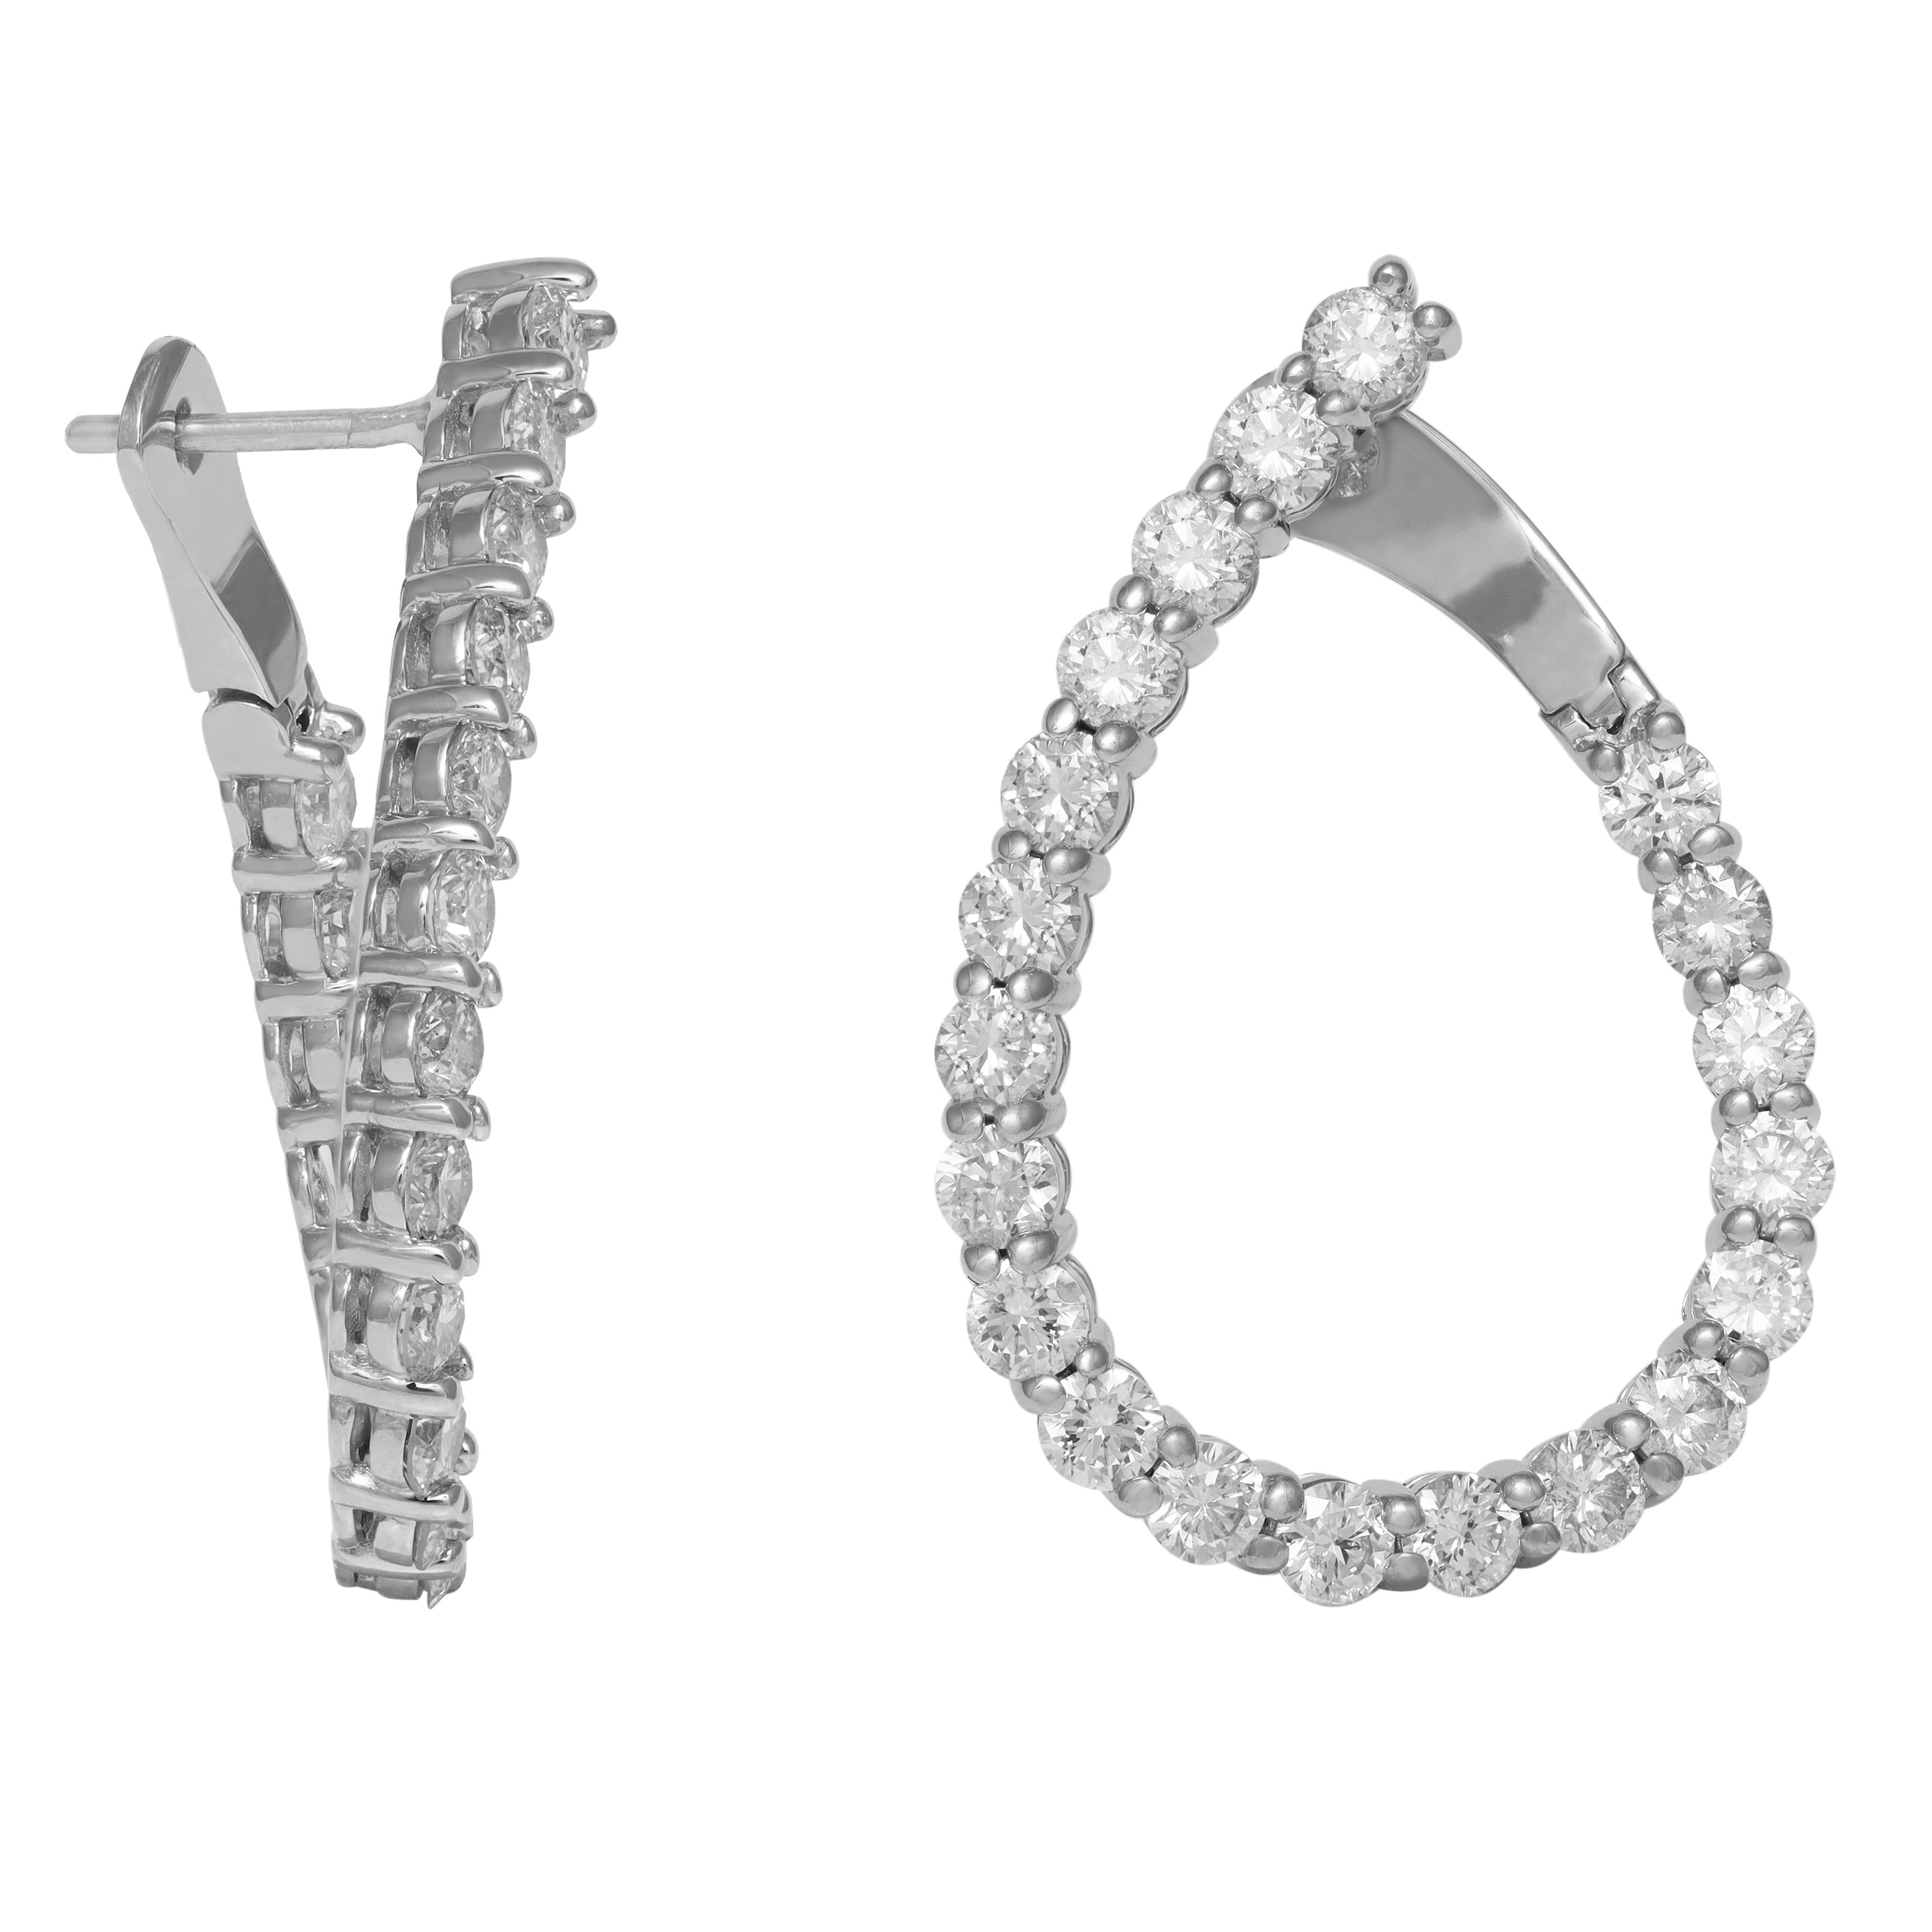 14kt Weißgold Mode Ohrringe mit 3,60 cts tw von runden Diamanten innen/außen GH SI
Diana M. ist seit über 35 Jahren ein führender Anbieter von hochwertigem Schmuck.
Diana M ist eine zentrale Anlaufstelle für alle Ihre Schmuckeinkäufe und führt eine